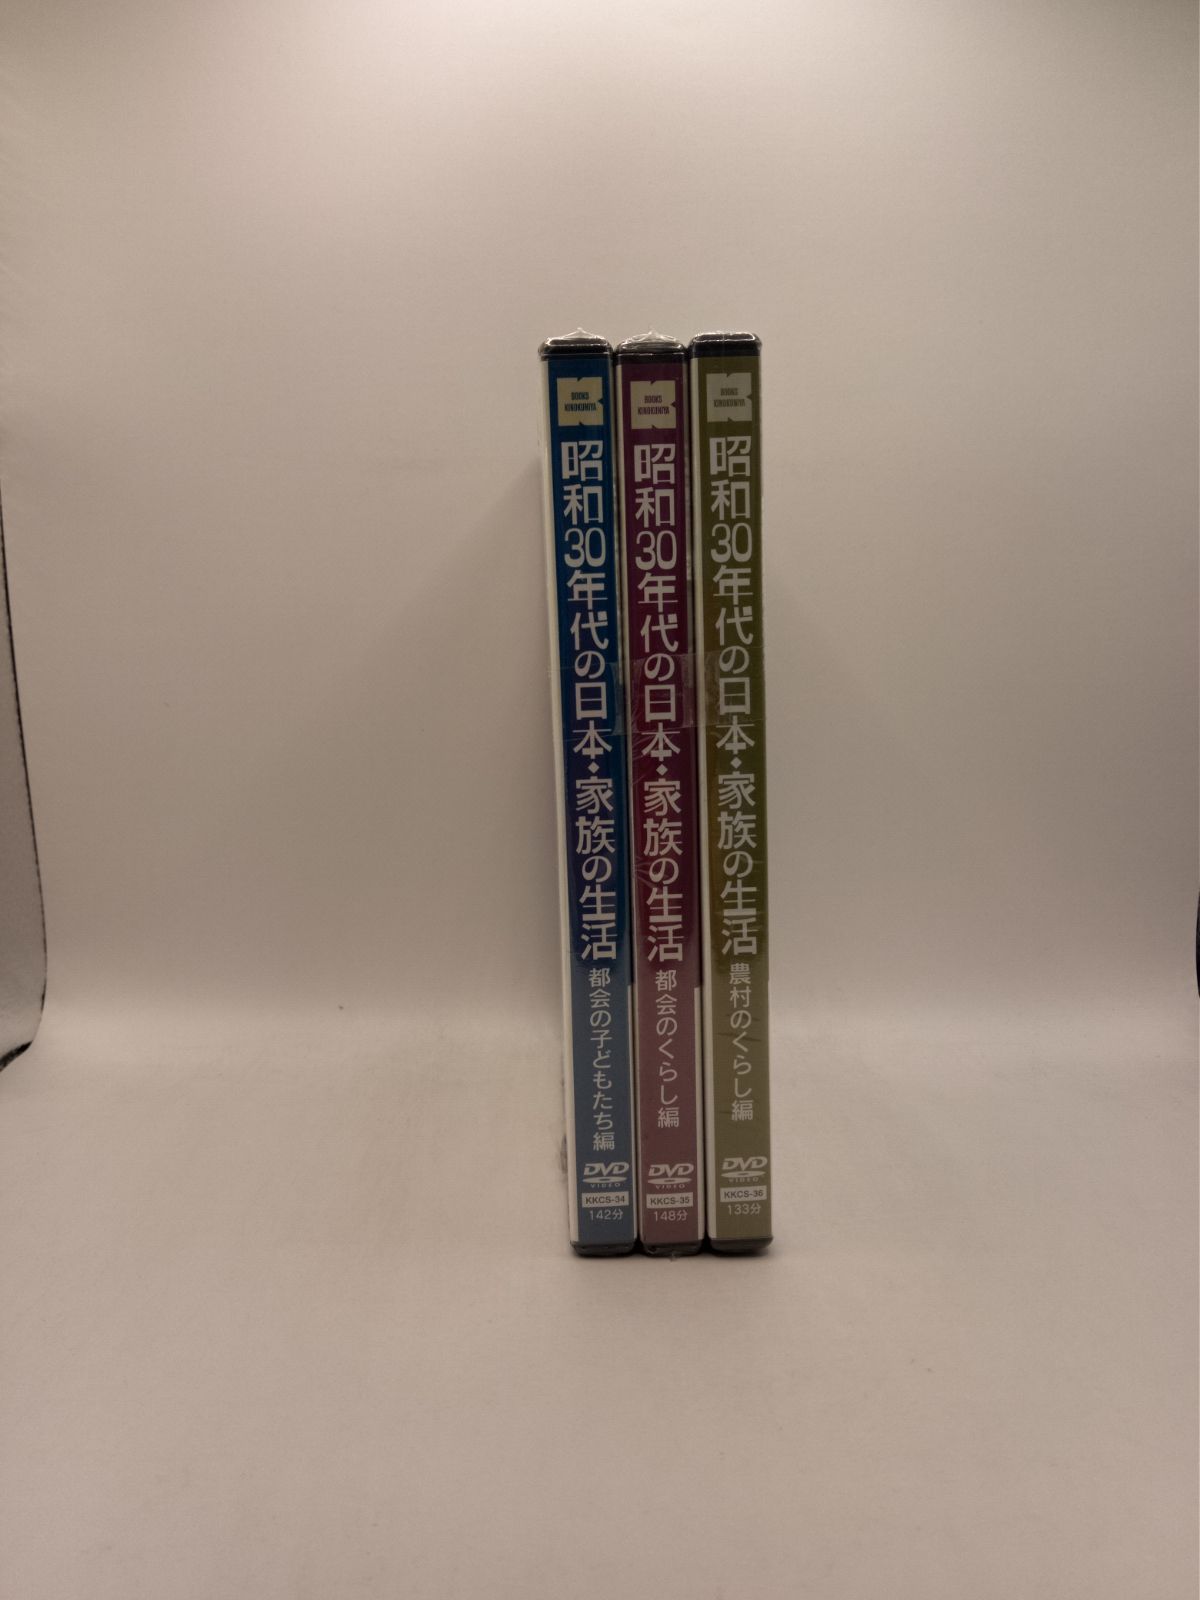 新品】昭和30年代の日本・家族3巻組 ＤＶＤ 5523 - メルカリ